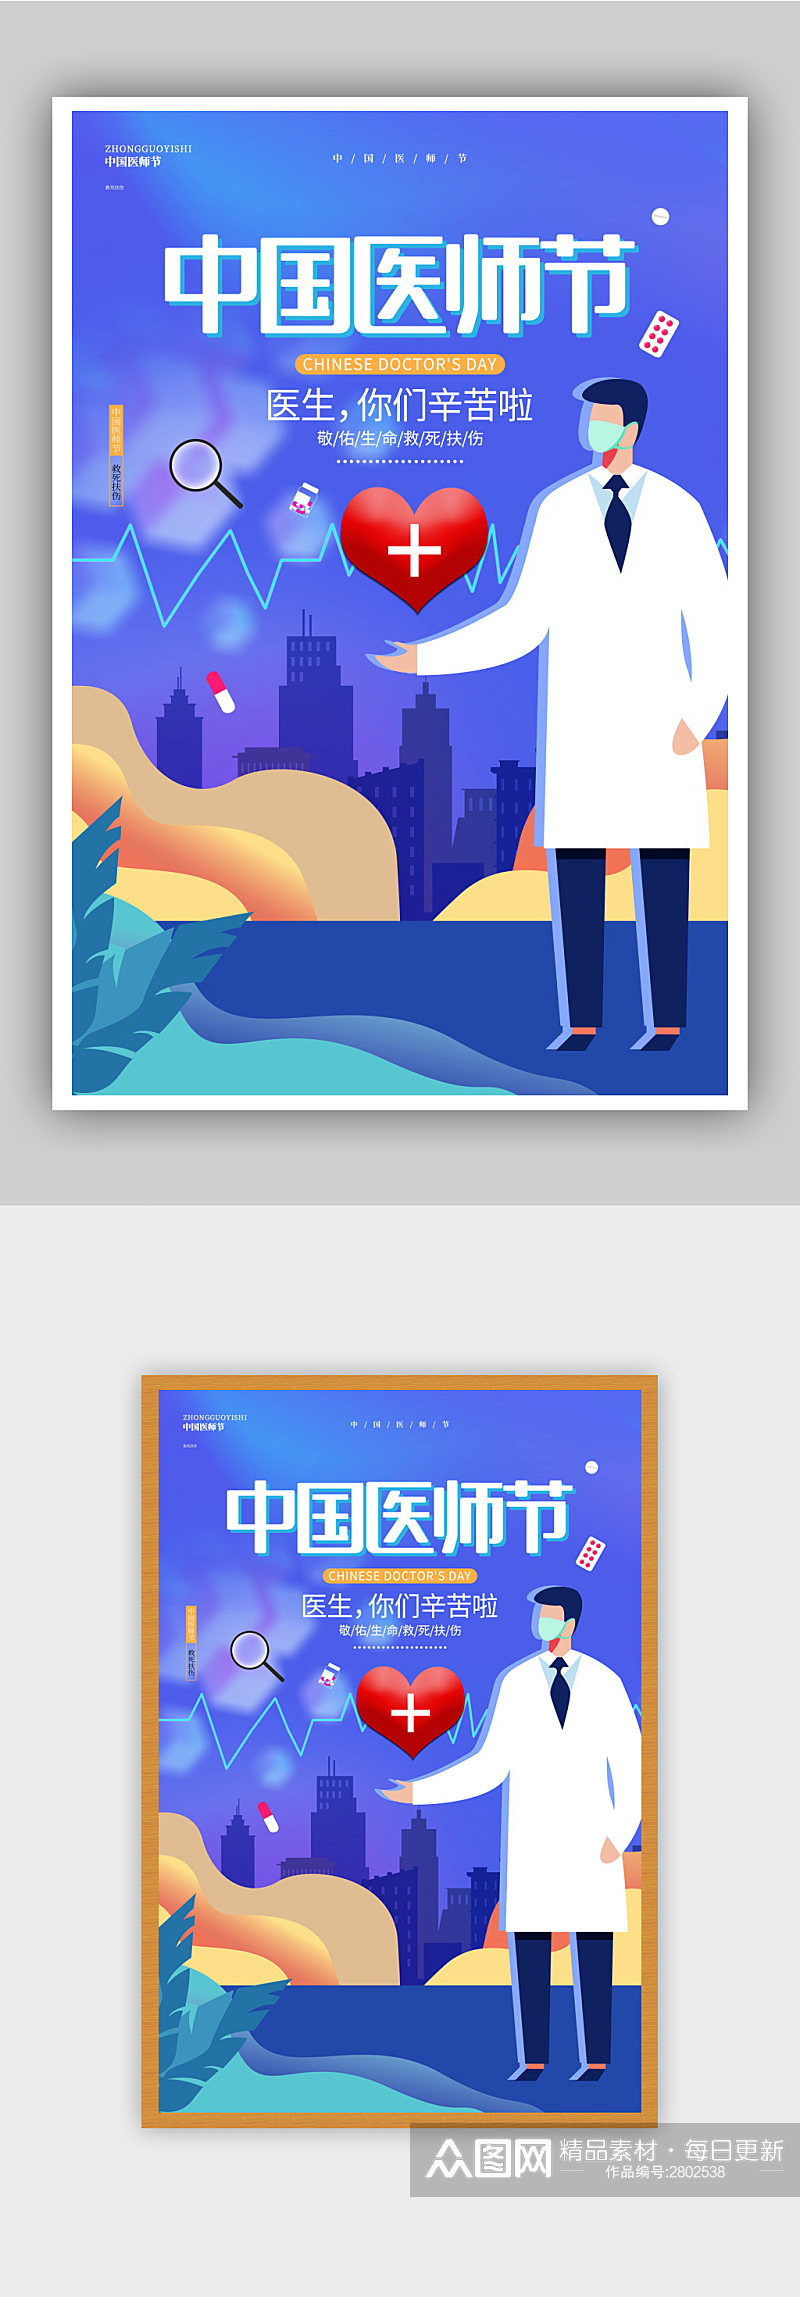 蓝色创意唯美中国医师节宣传海报设计素材